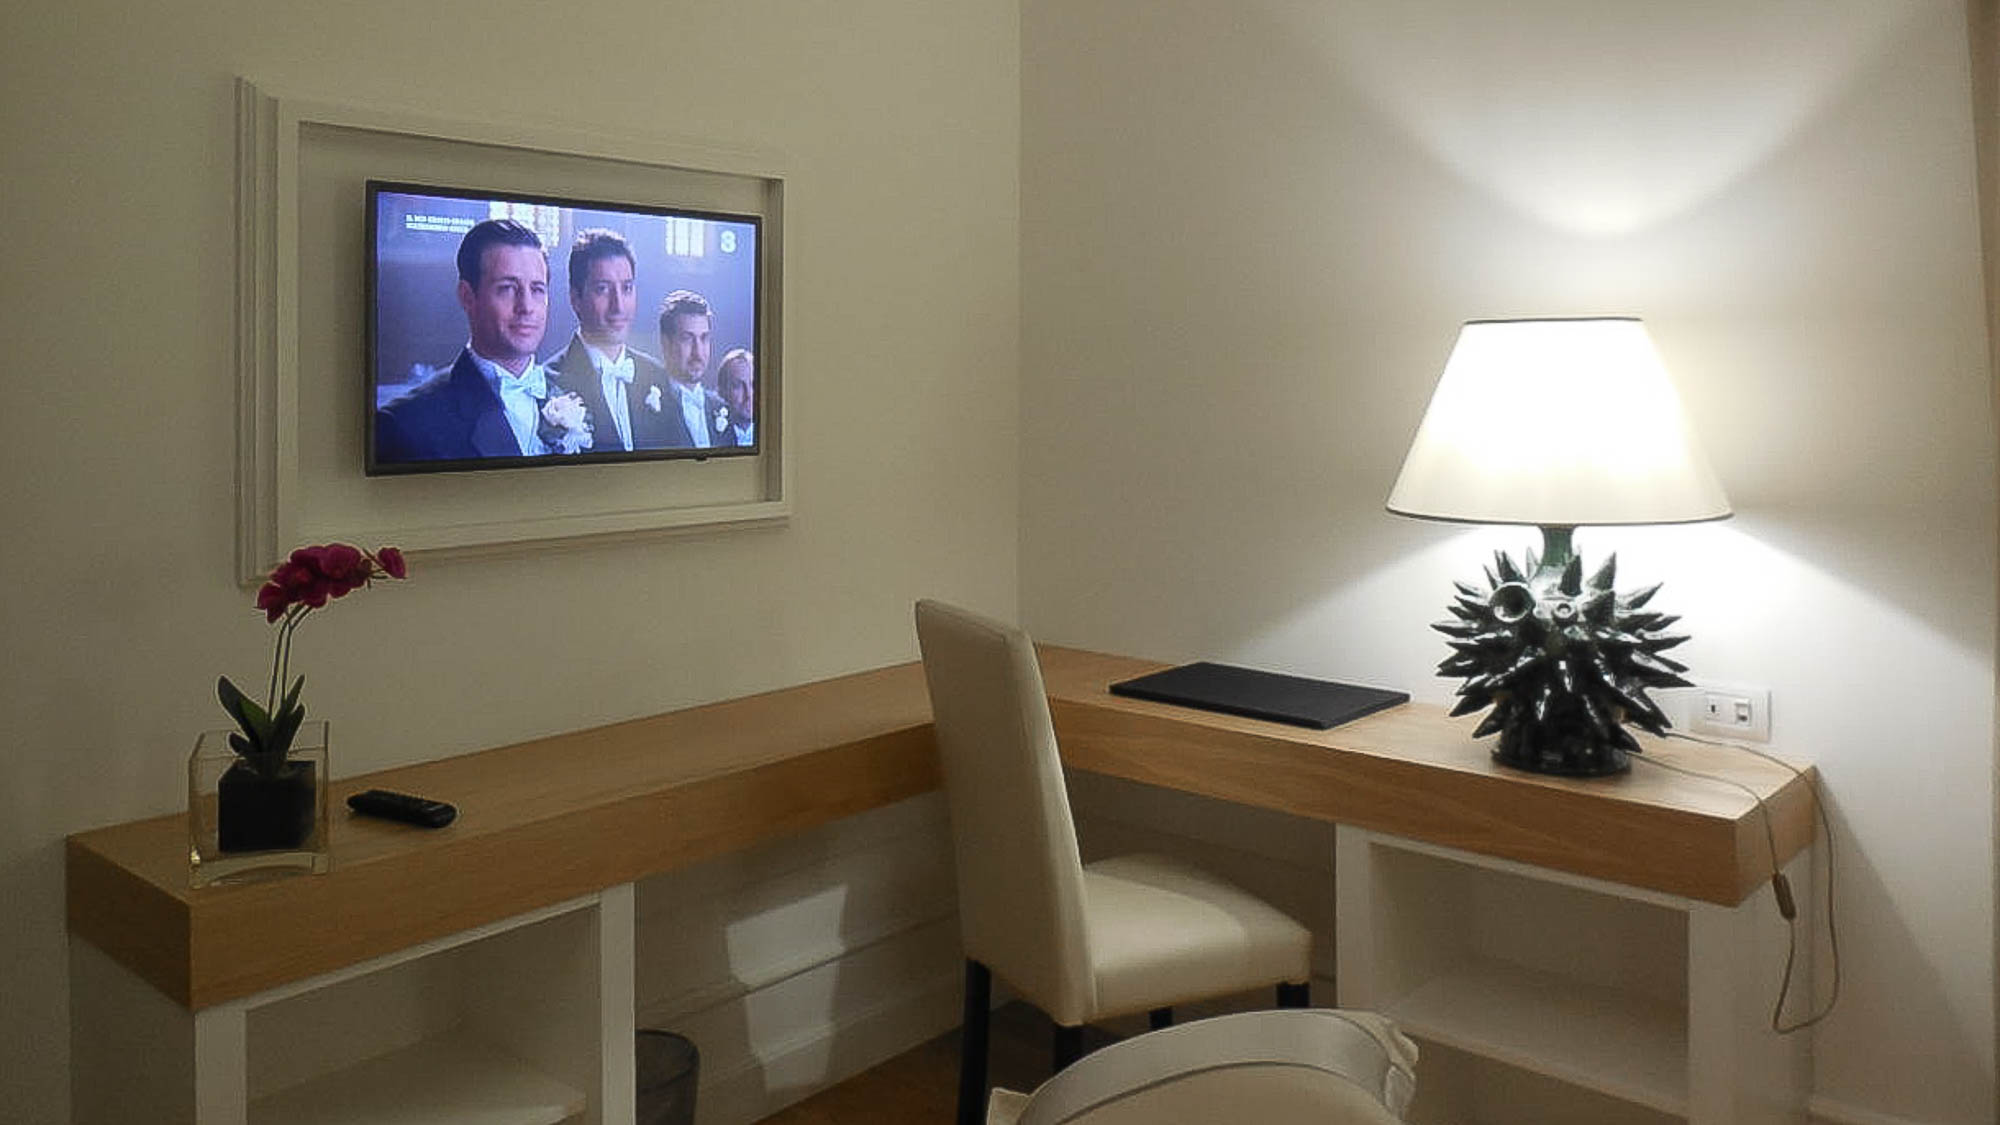 Hotel TV Samsung installato a nell'arredamento della camera